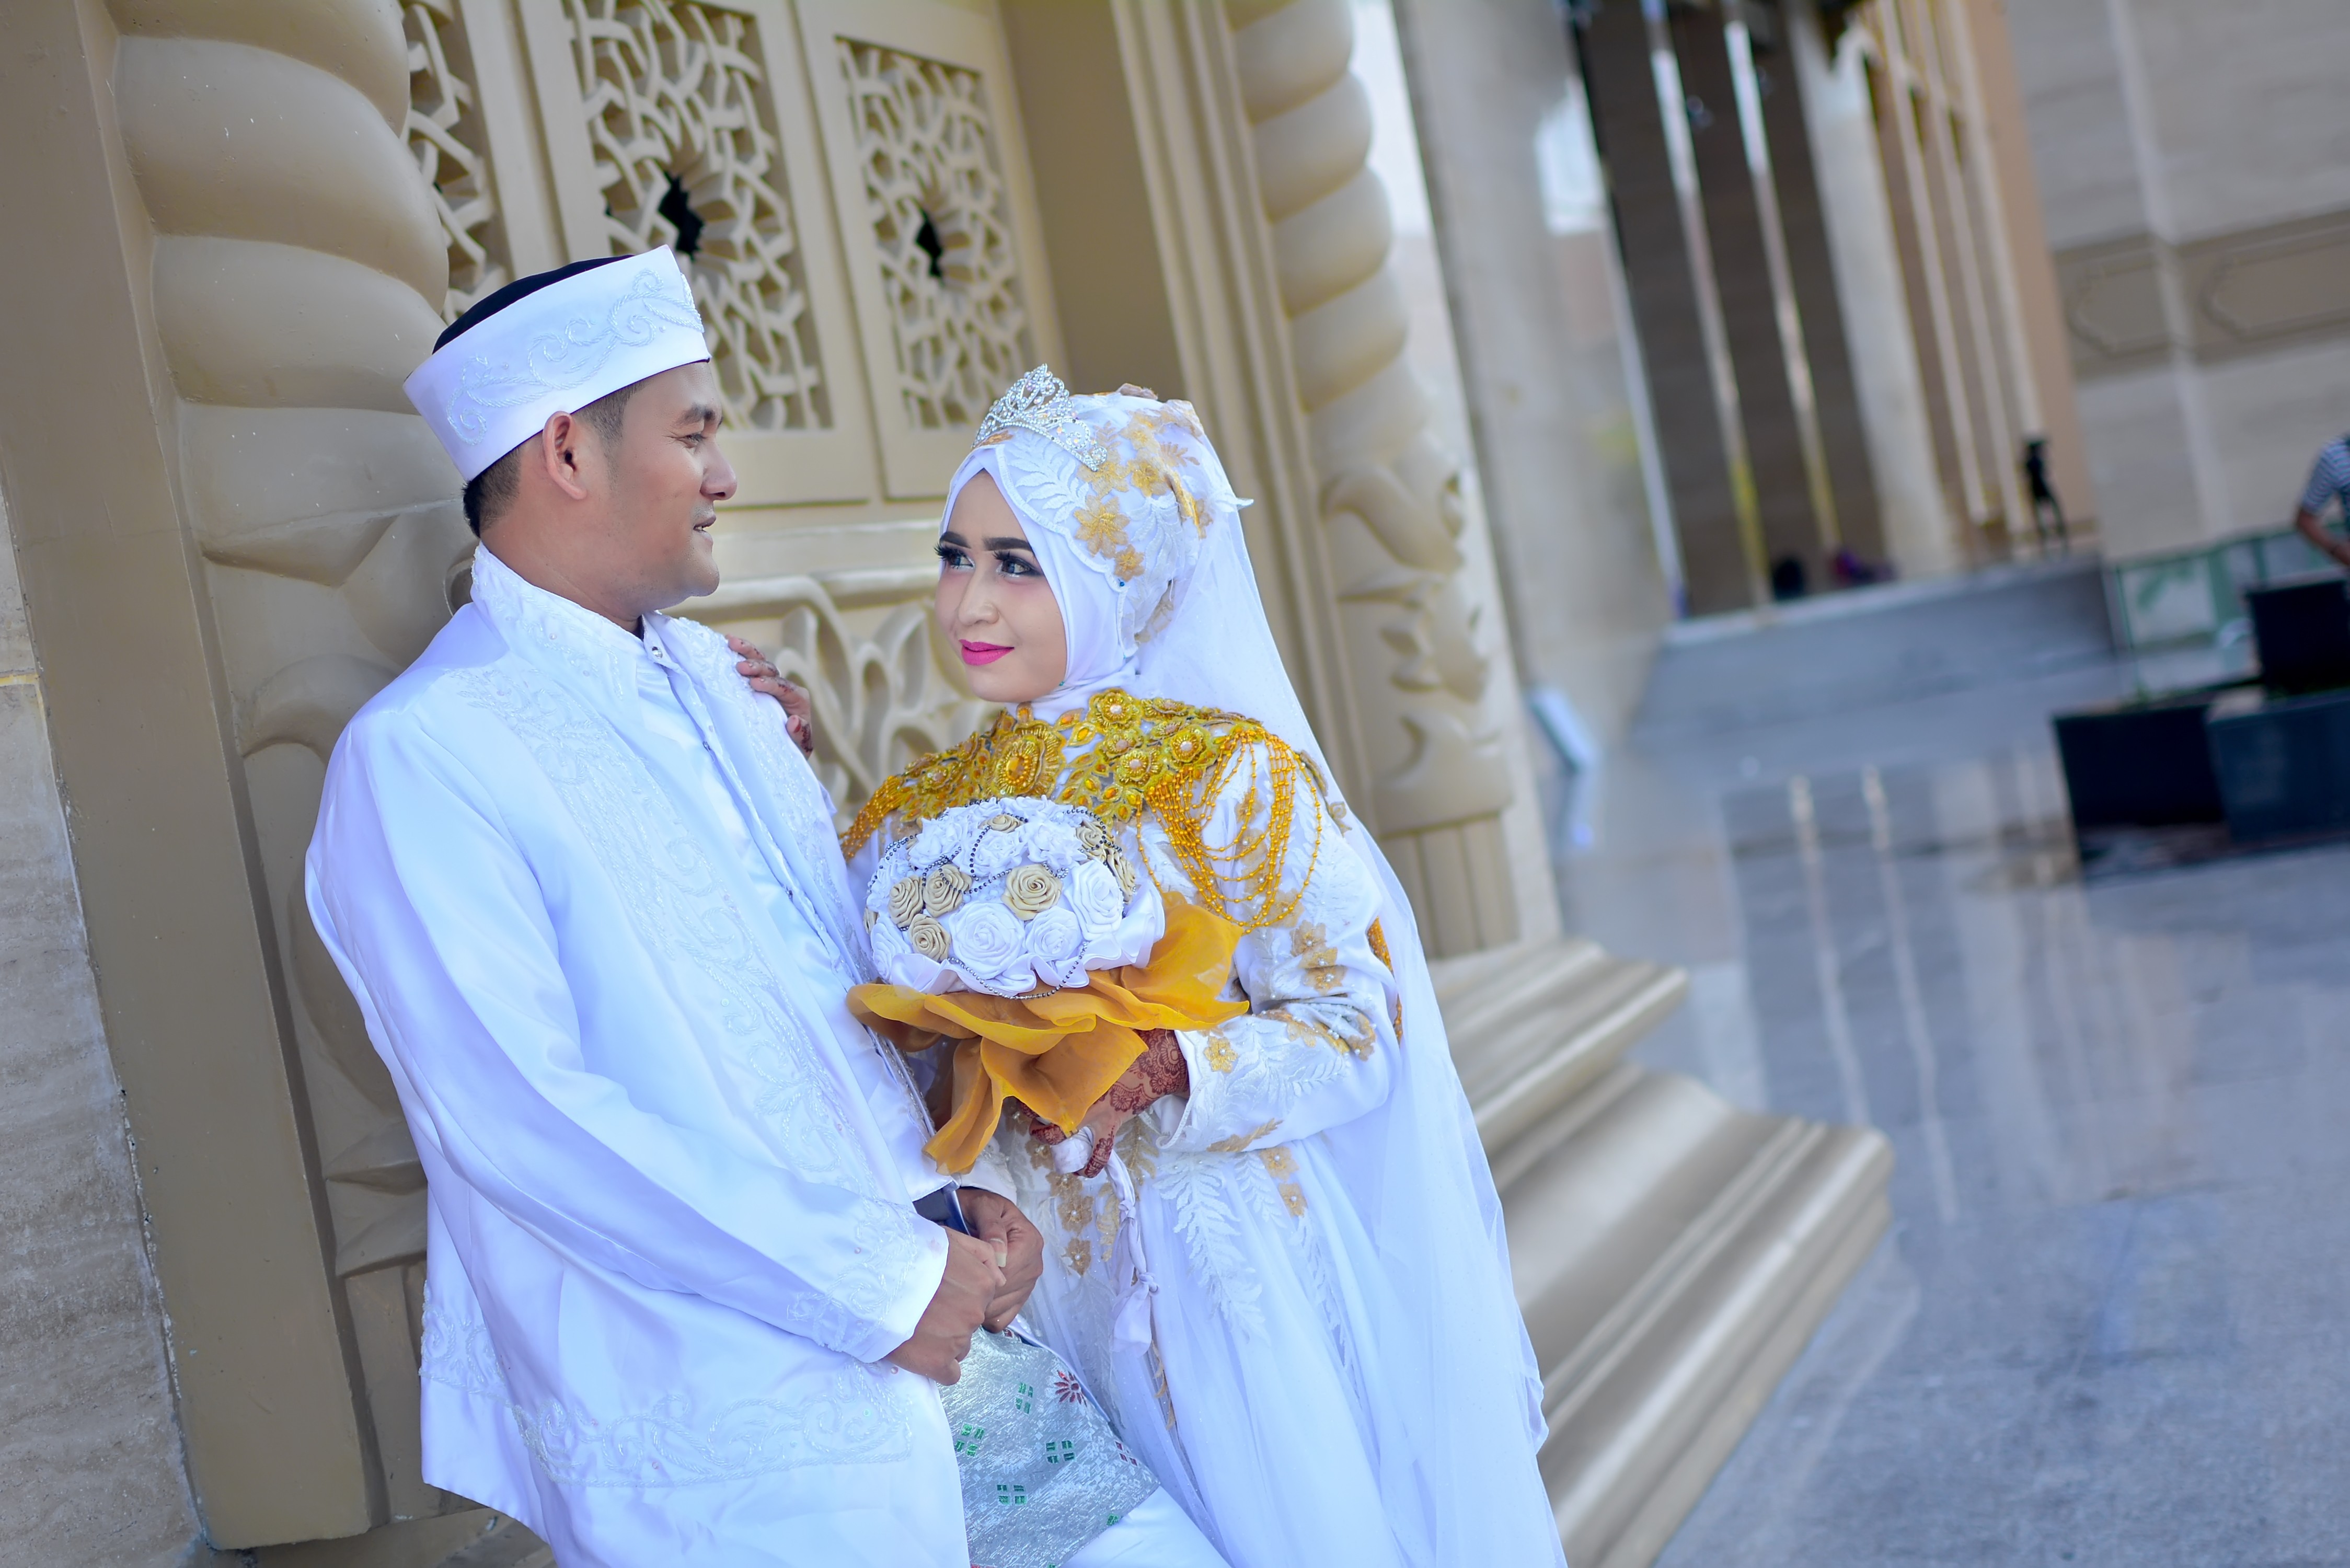 Ide Populer Untuk Prewed Di Masjid | Gallery Pre Wedding